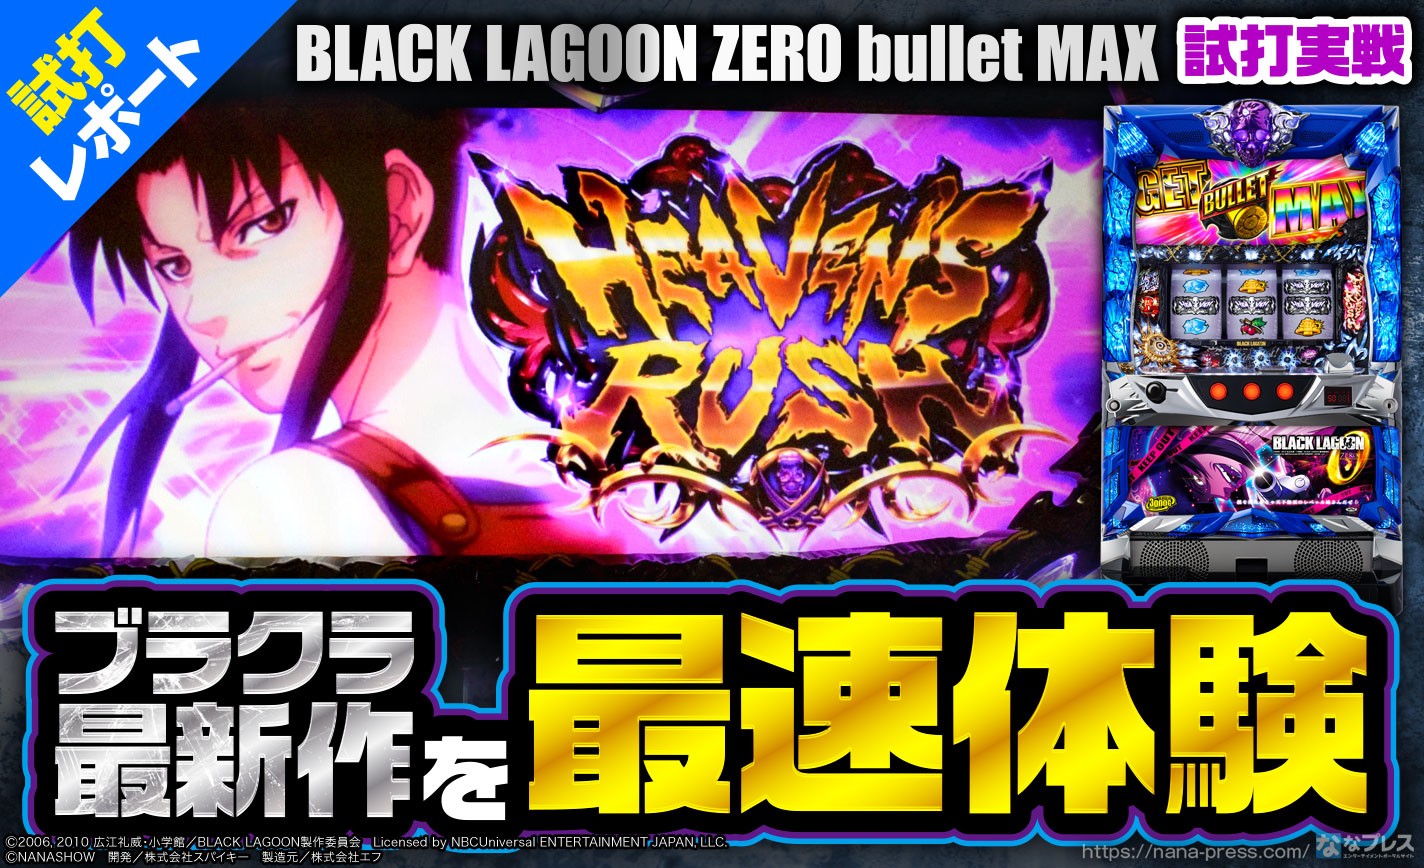 【BLACK LAGOON ZERO bullet MAX】前作と大きく変わったAT！ショールーム実戦でシステムと遊技の流れを紹介！ eyecatch-image